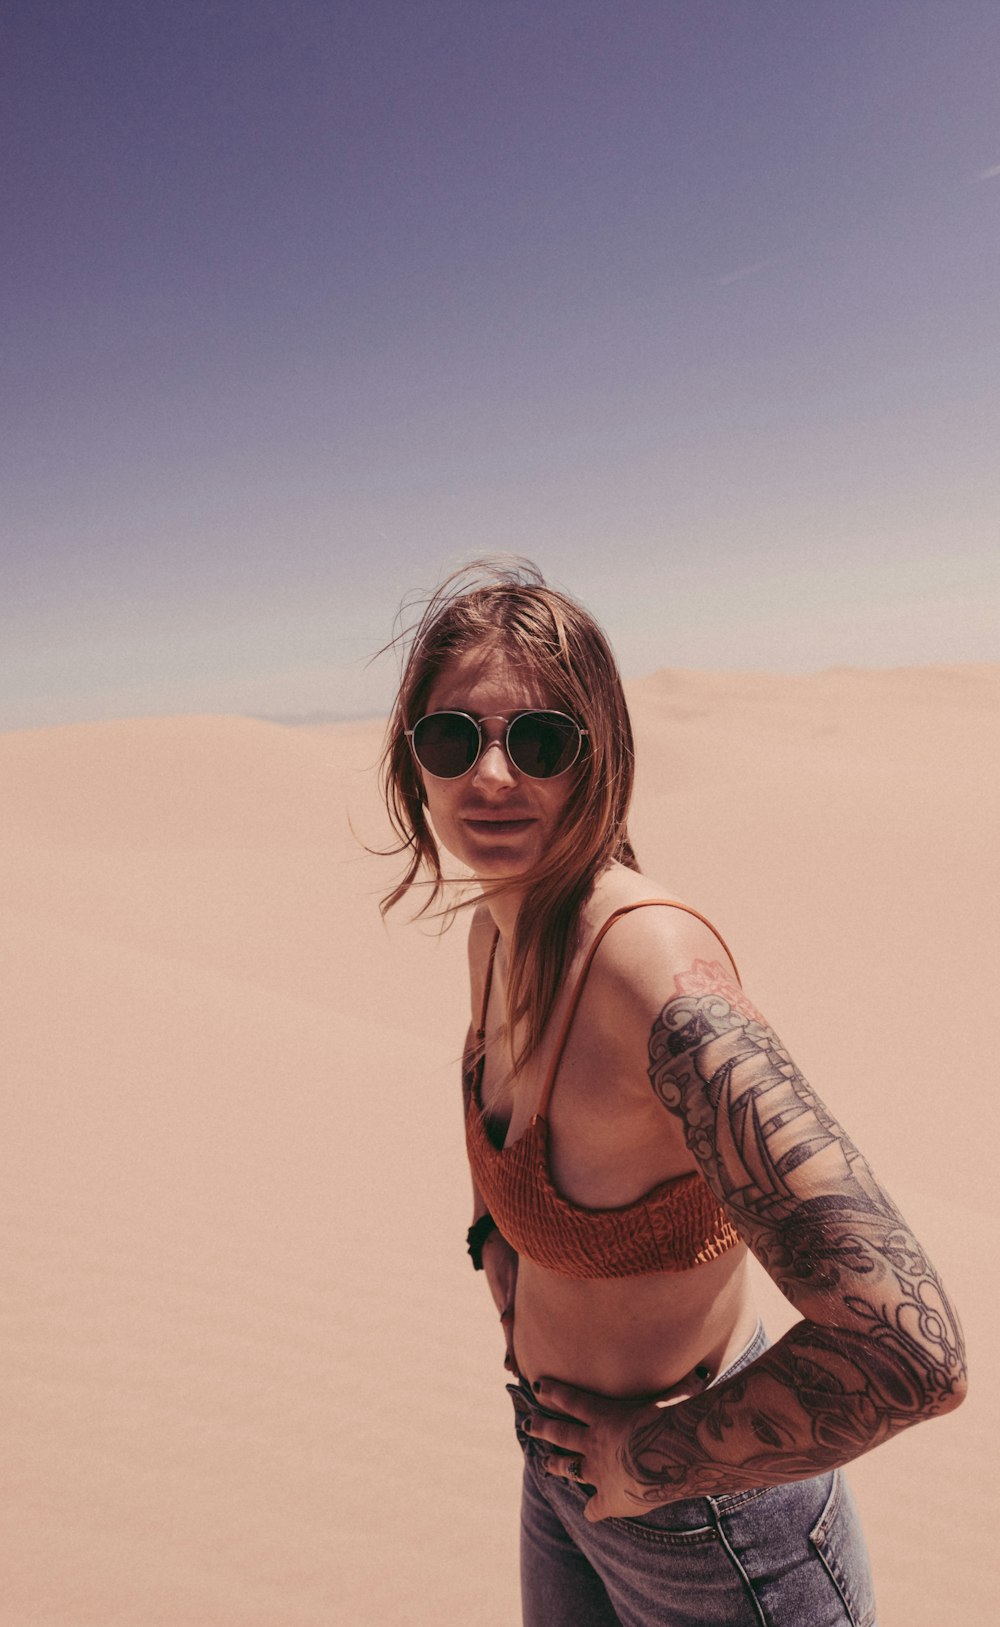 mulher no sutiã de malha no deserto